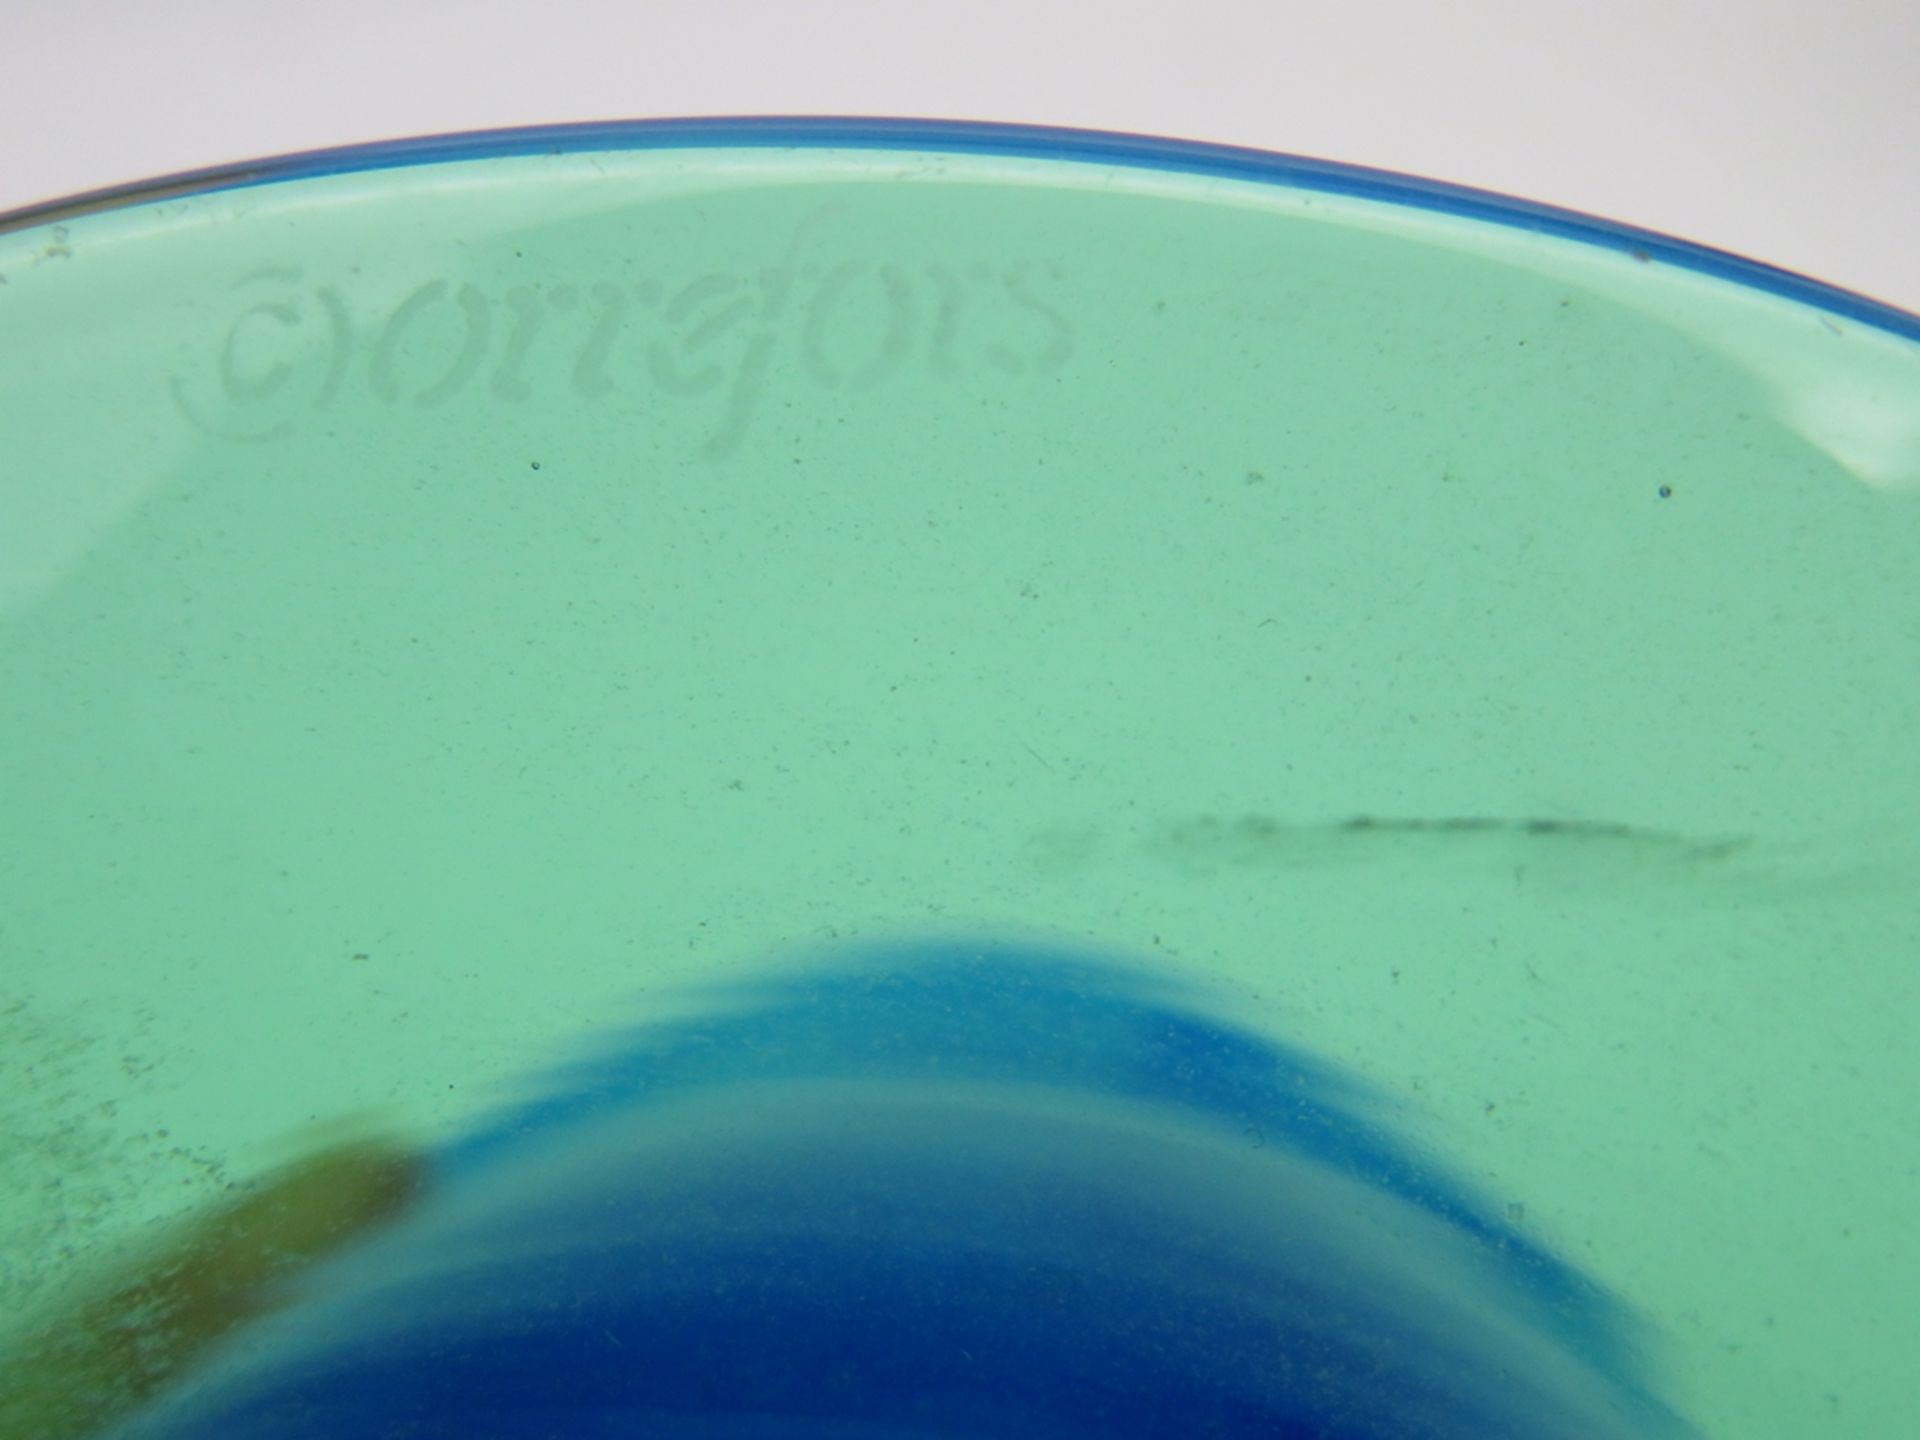 Design Vase, Schweden, Orrefors, blaue Kuppa auf grünem Standfuss, sign., h 19 cm, d 15 cm. - Bild 2 aus 2